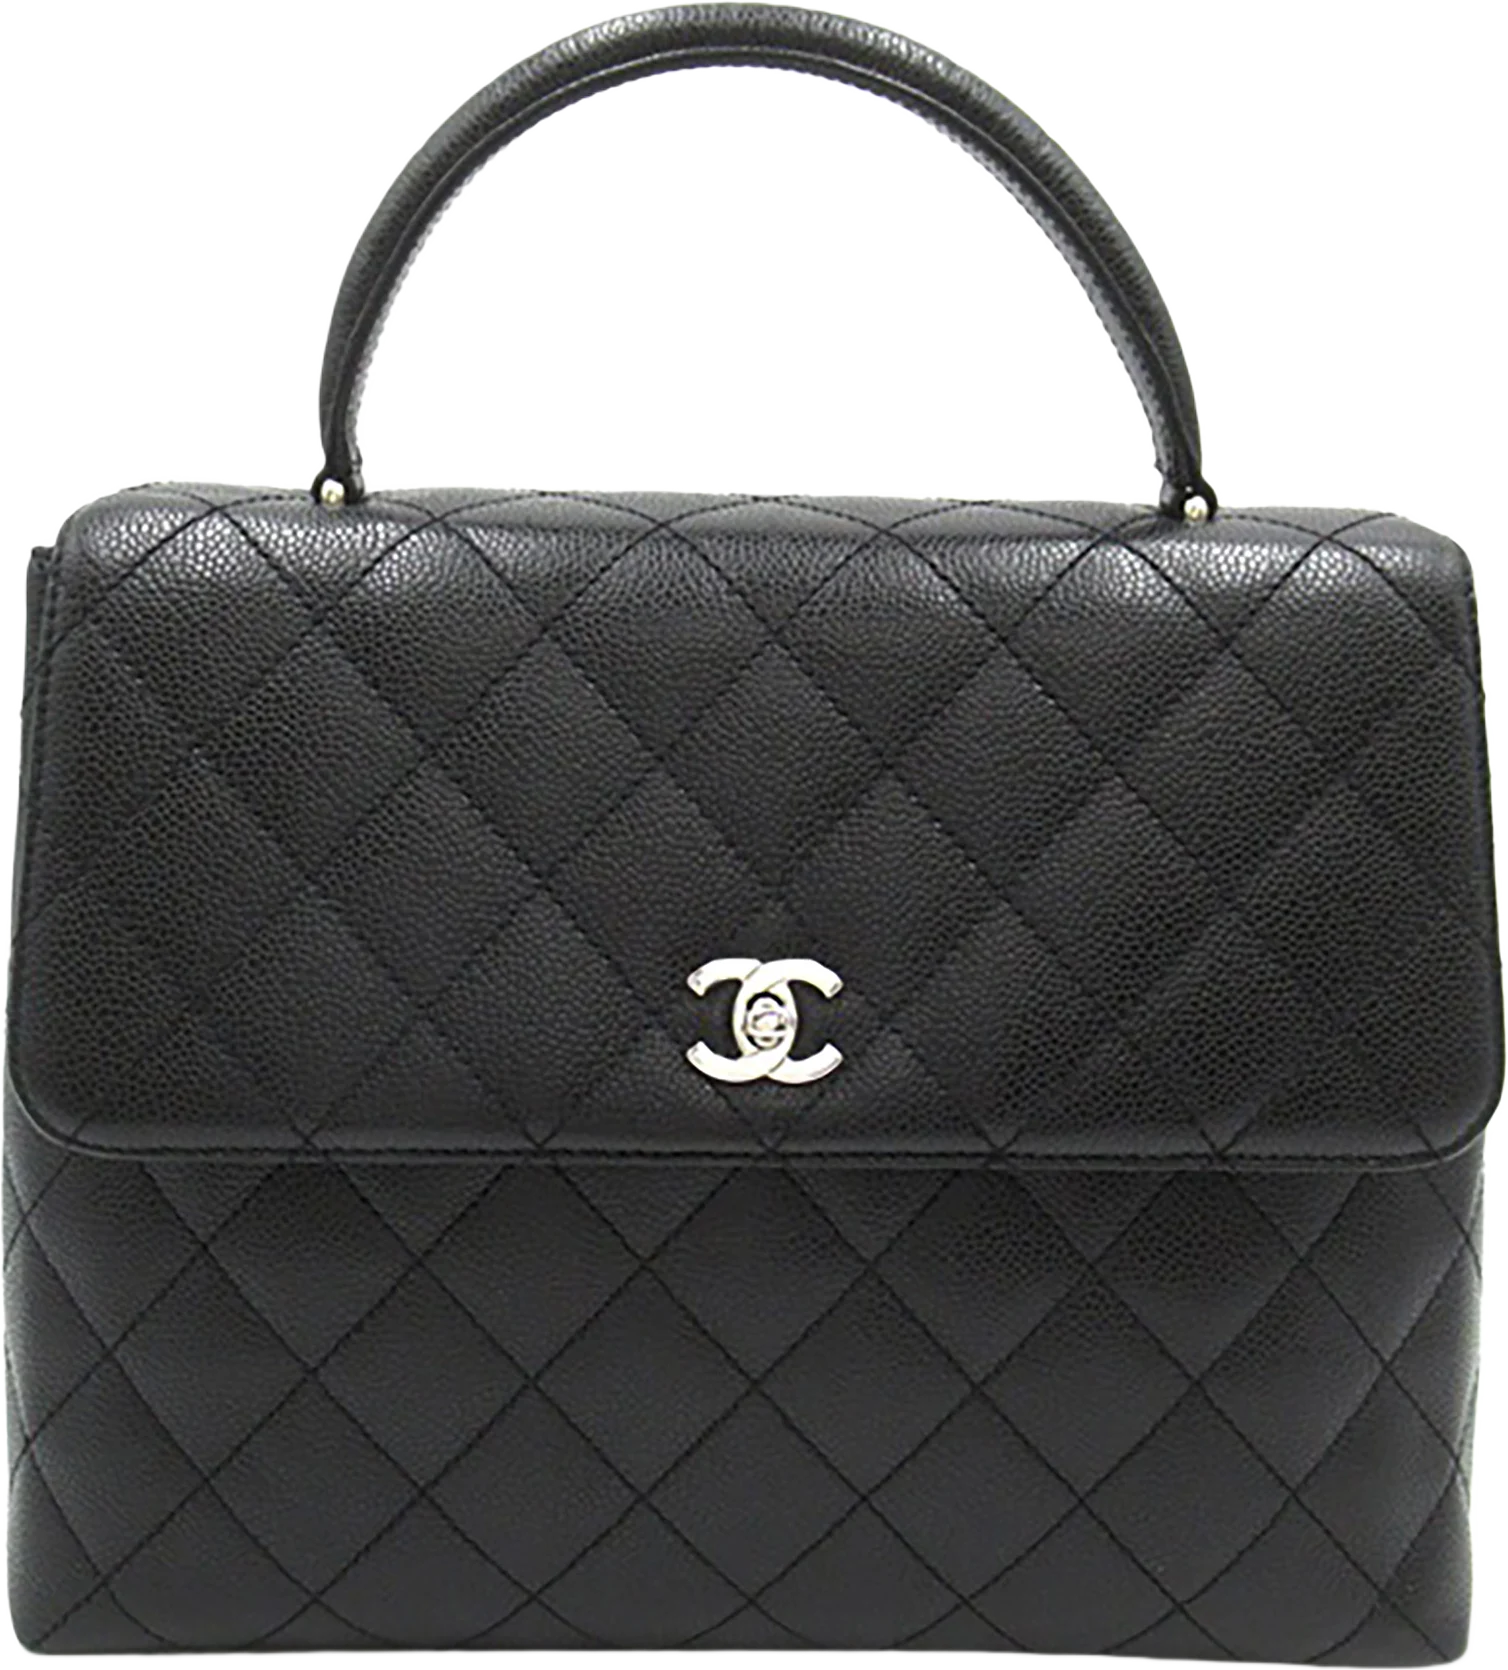 Chanel Caviar Kelly Top Handle Bag